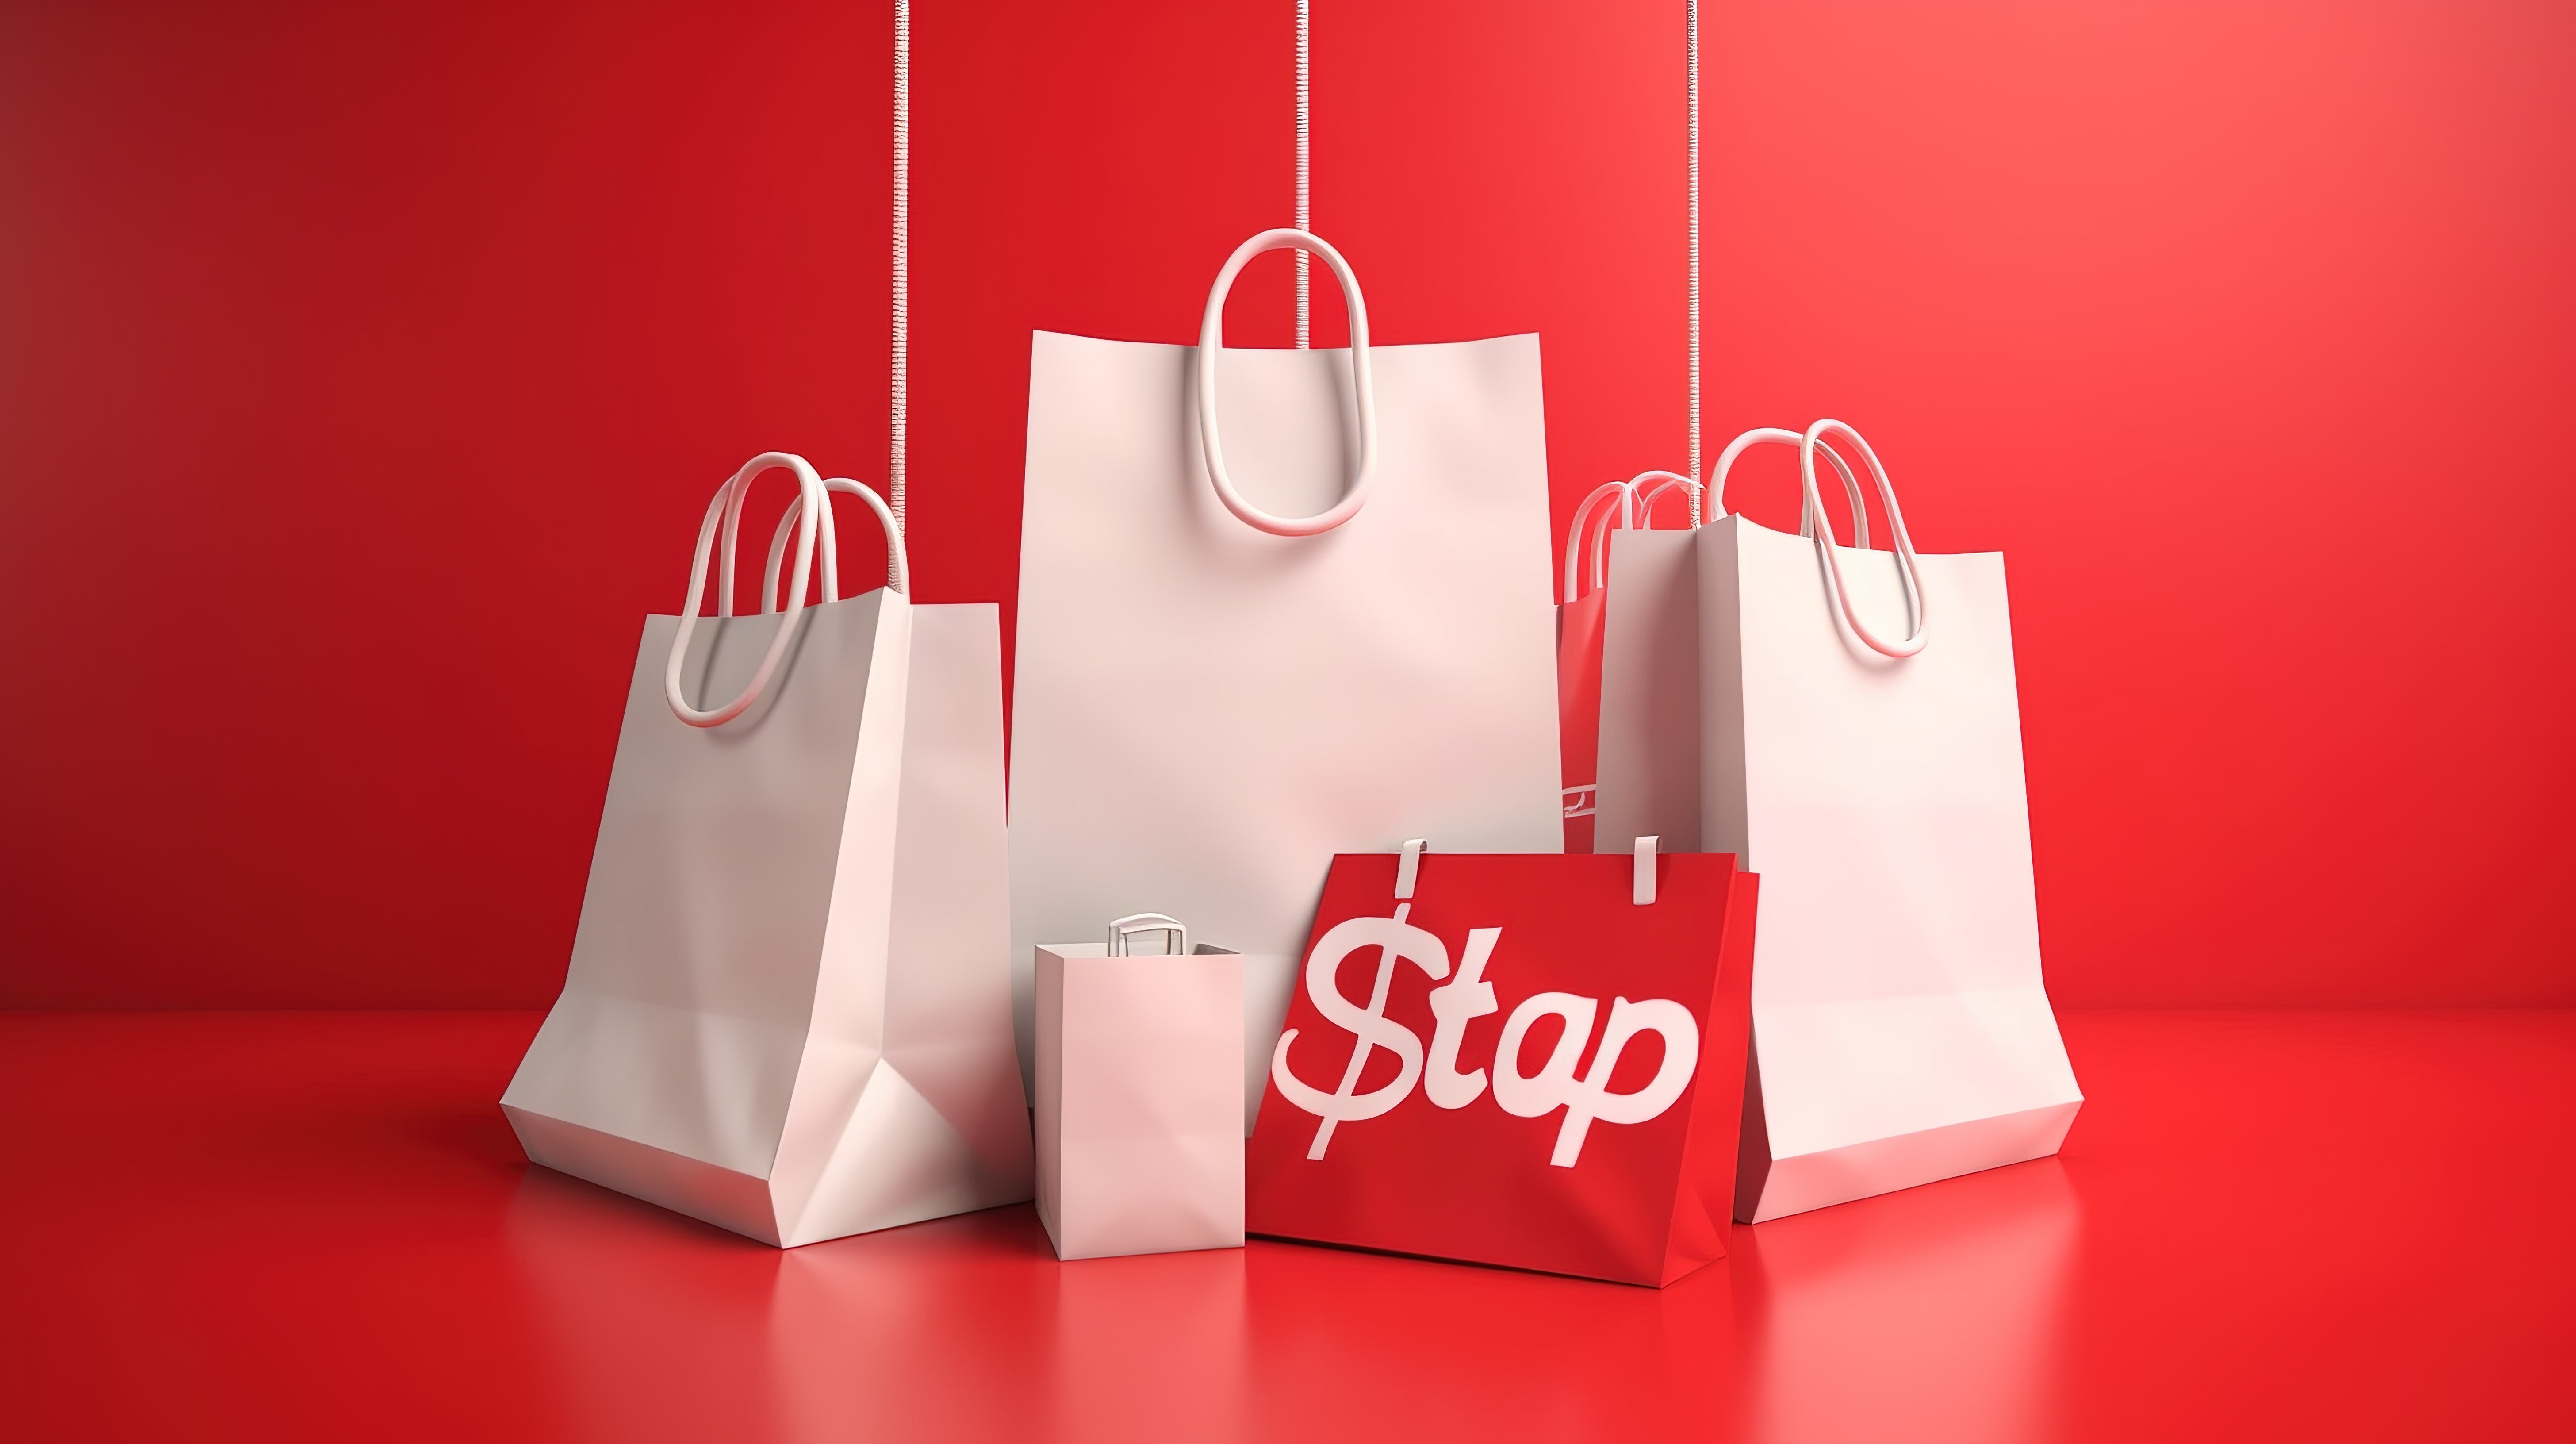 促销主题 3D 图形，带有白色促销标志购物袋和促销标签，悬挂在充满活力的红色背景下图片